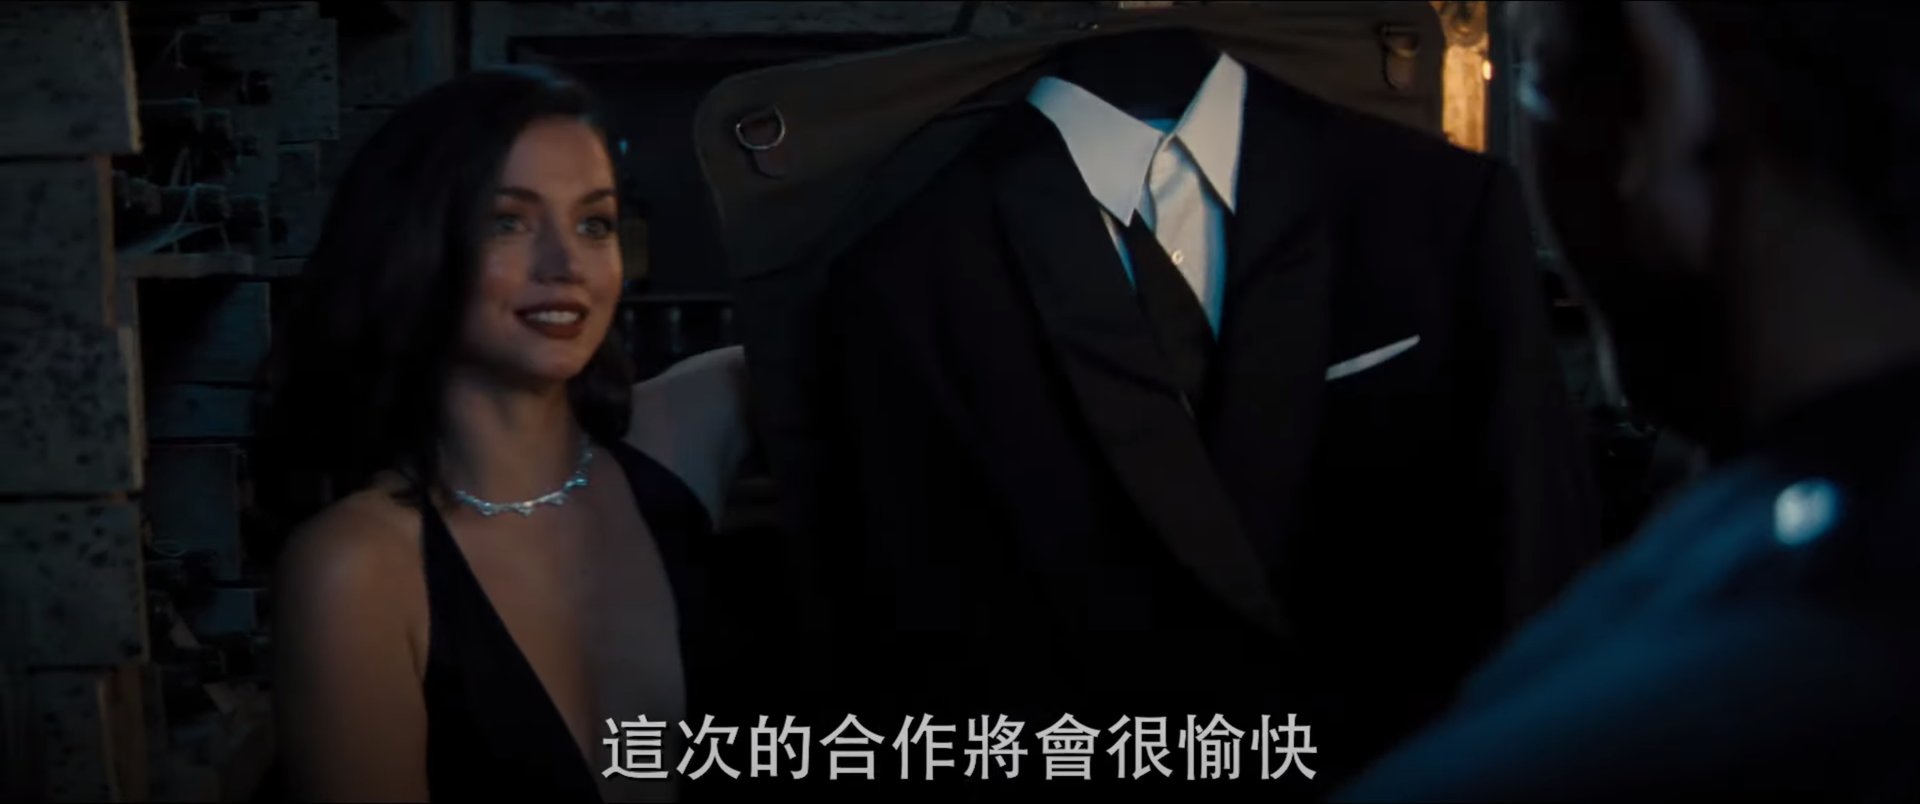  《007 生死交戰》 - 本集新加入的中南美洲 (演員本身是古巴裔) 女情報員 - 配上龐德的反應，可能是致敬《007 首部曲：皇家夜總會》裡 Eva Green 幫龐德準備好一套附領結的西裝 (目視身材就訂作合身)，所以這次龐德秒笑接受 (之前那次第一時間是不悅的)